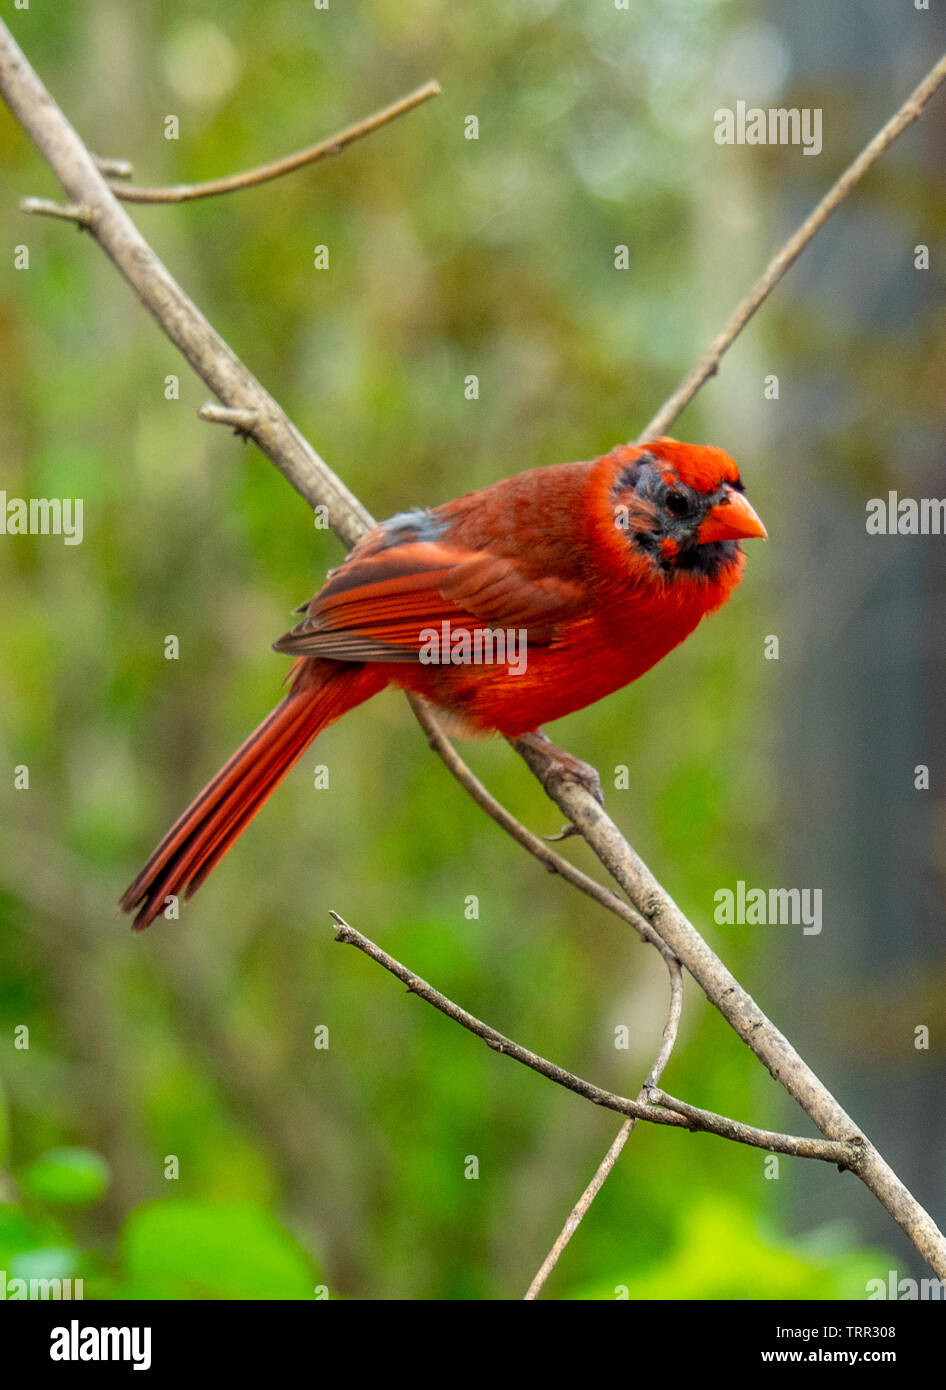 Redbird or common cardinal, Cardinalis cardinalis on a twig. Stock Photo